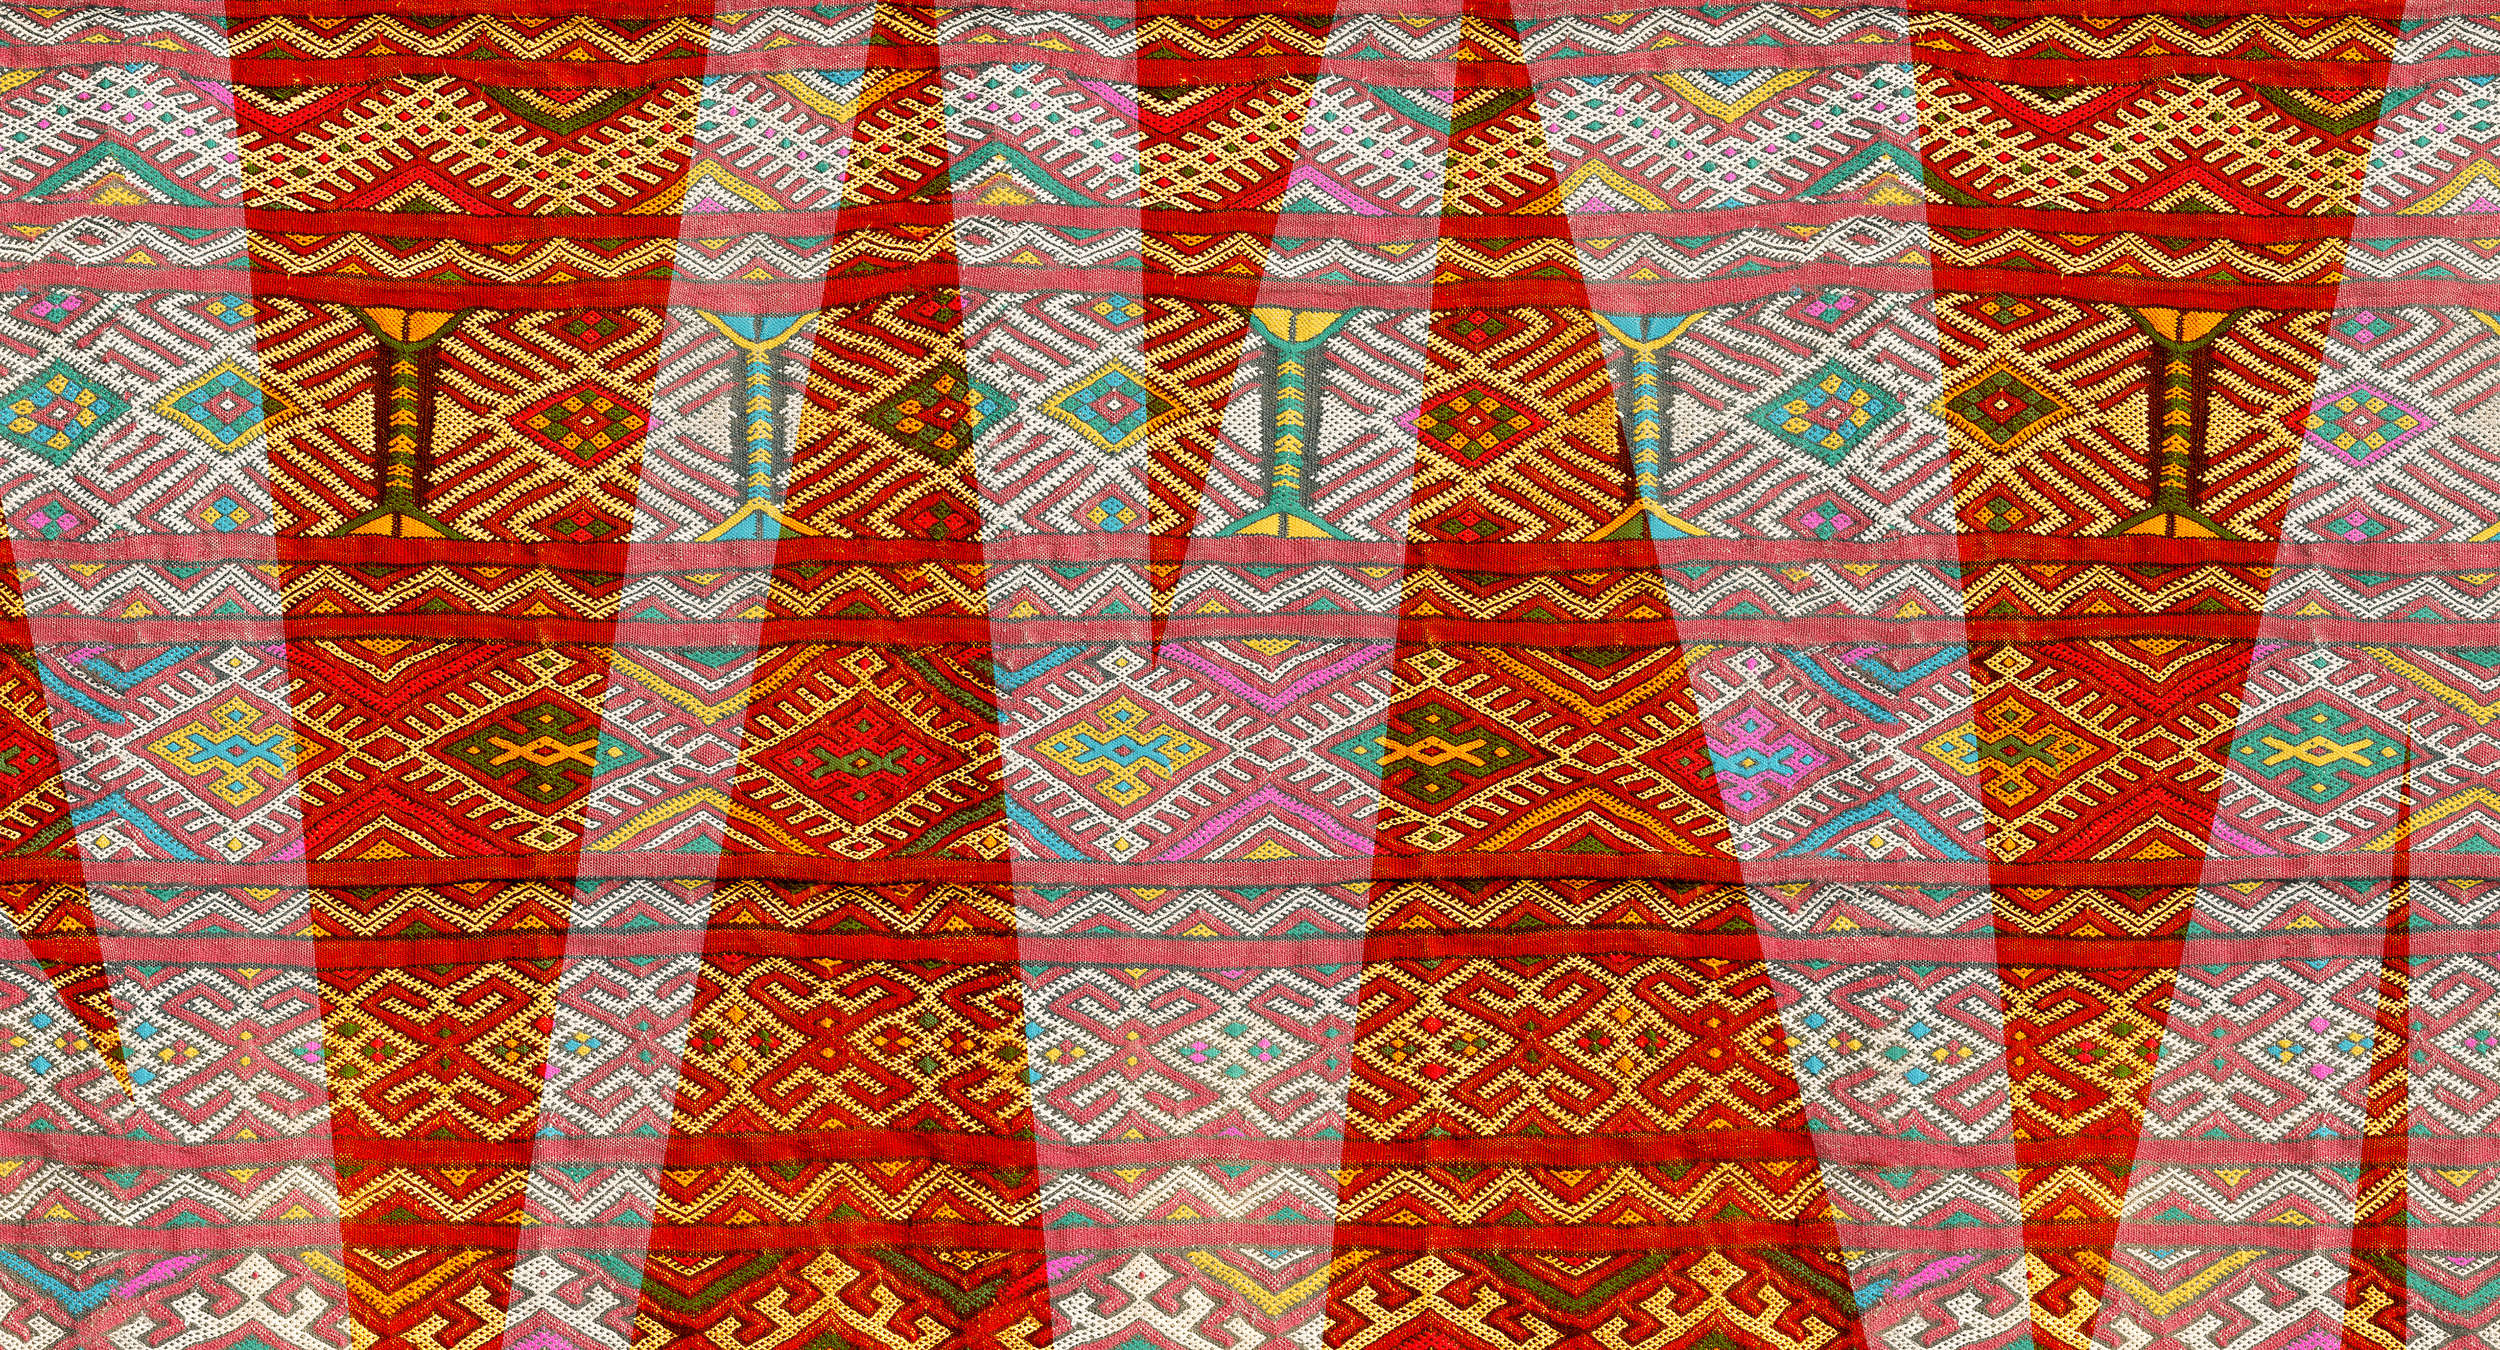             Ethno Behang met Textiel Ontwerp & Weefpatroon - Rood, Groen, Wit
        